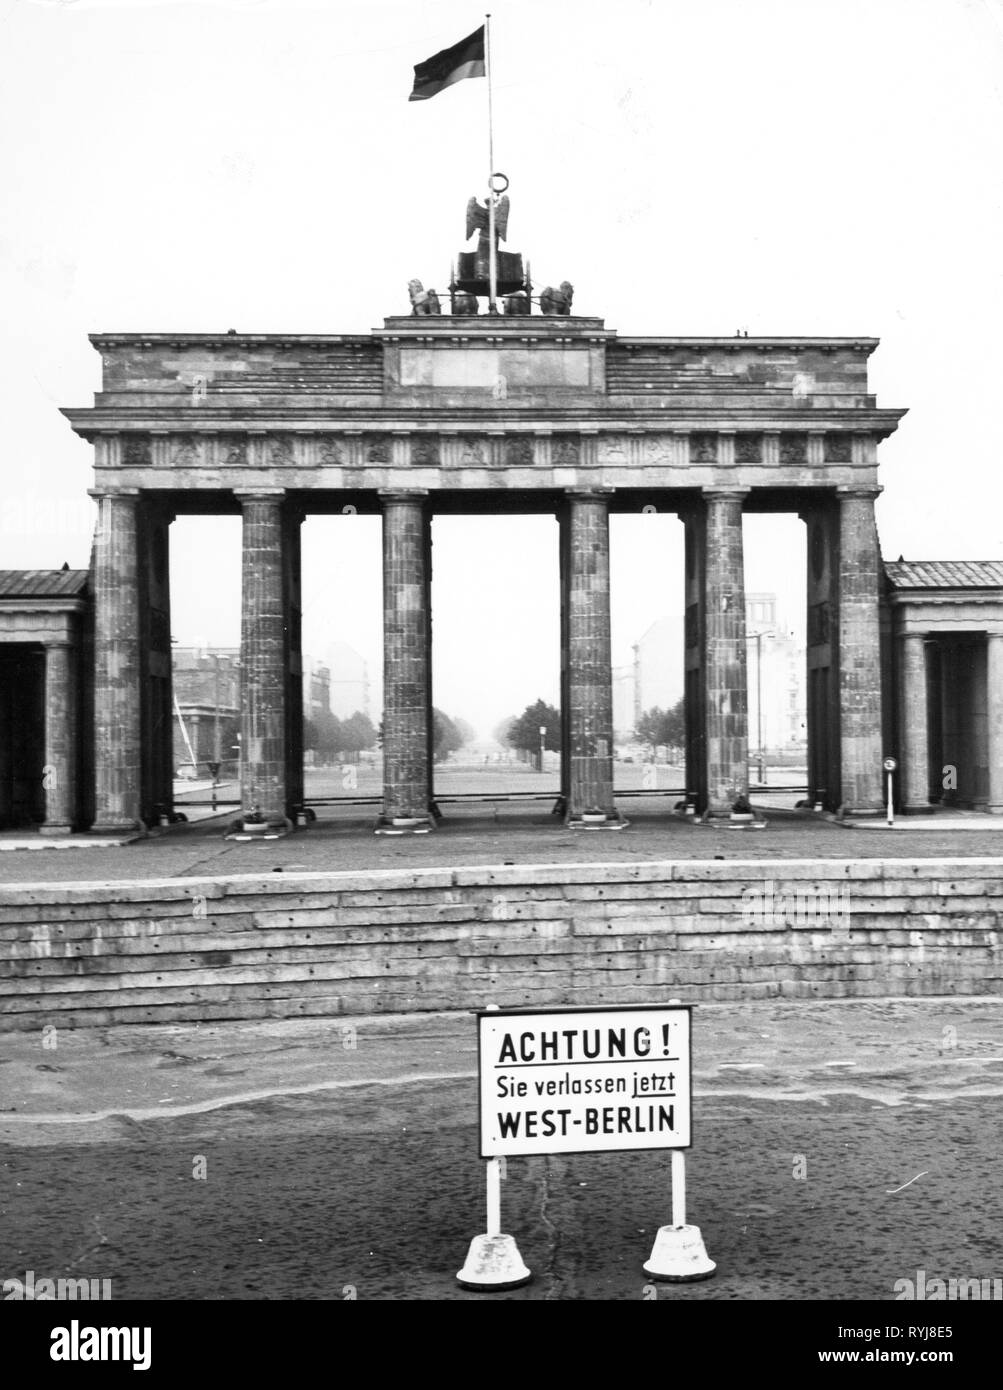 Geographie/Reisen, Deutschland, Berlin, Brandenburger Tor, Westseite, Schild "Achtung! Sie verlassen jetzt West-berlin", 1960er Jahre, Additional-Rights - Clearance-Info - Not-Available Stockfoto